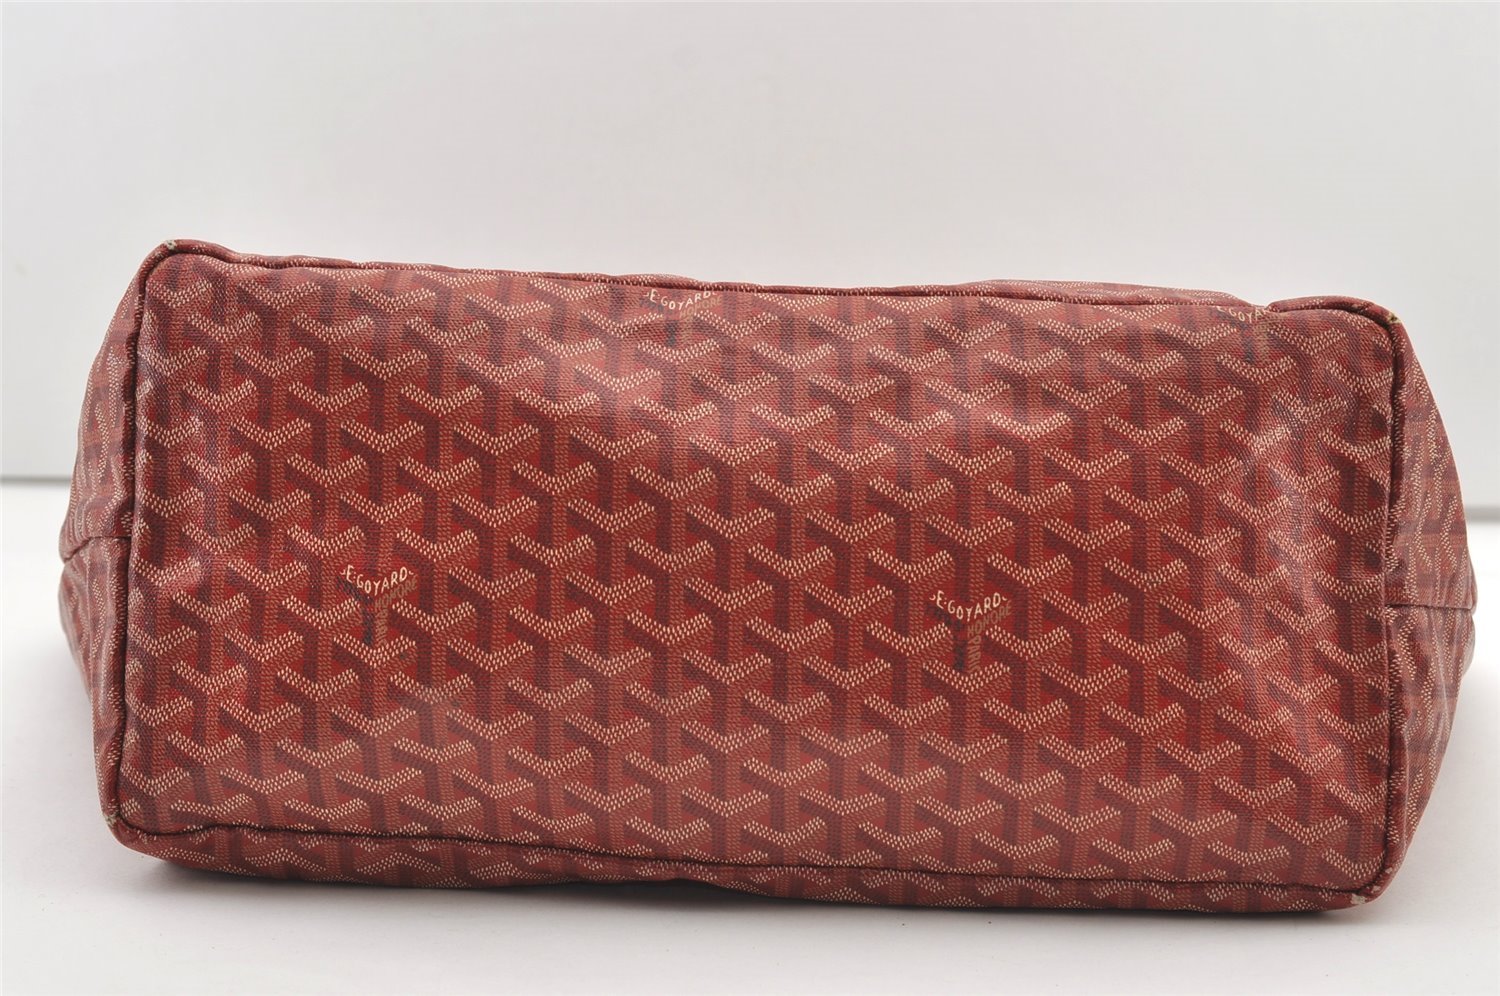 Authentic Goyard Vintage Saint Louis GM Shoulder Tote Bag PVC Leather Red 2767J